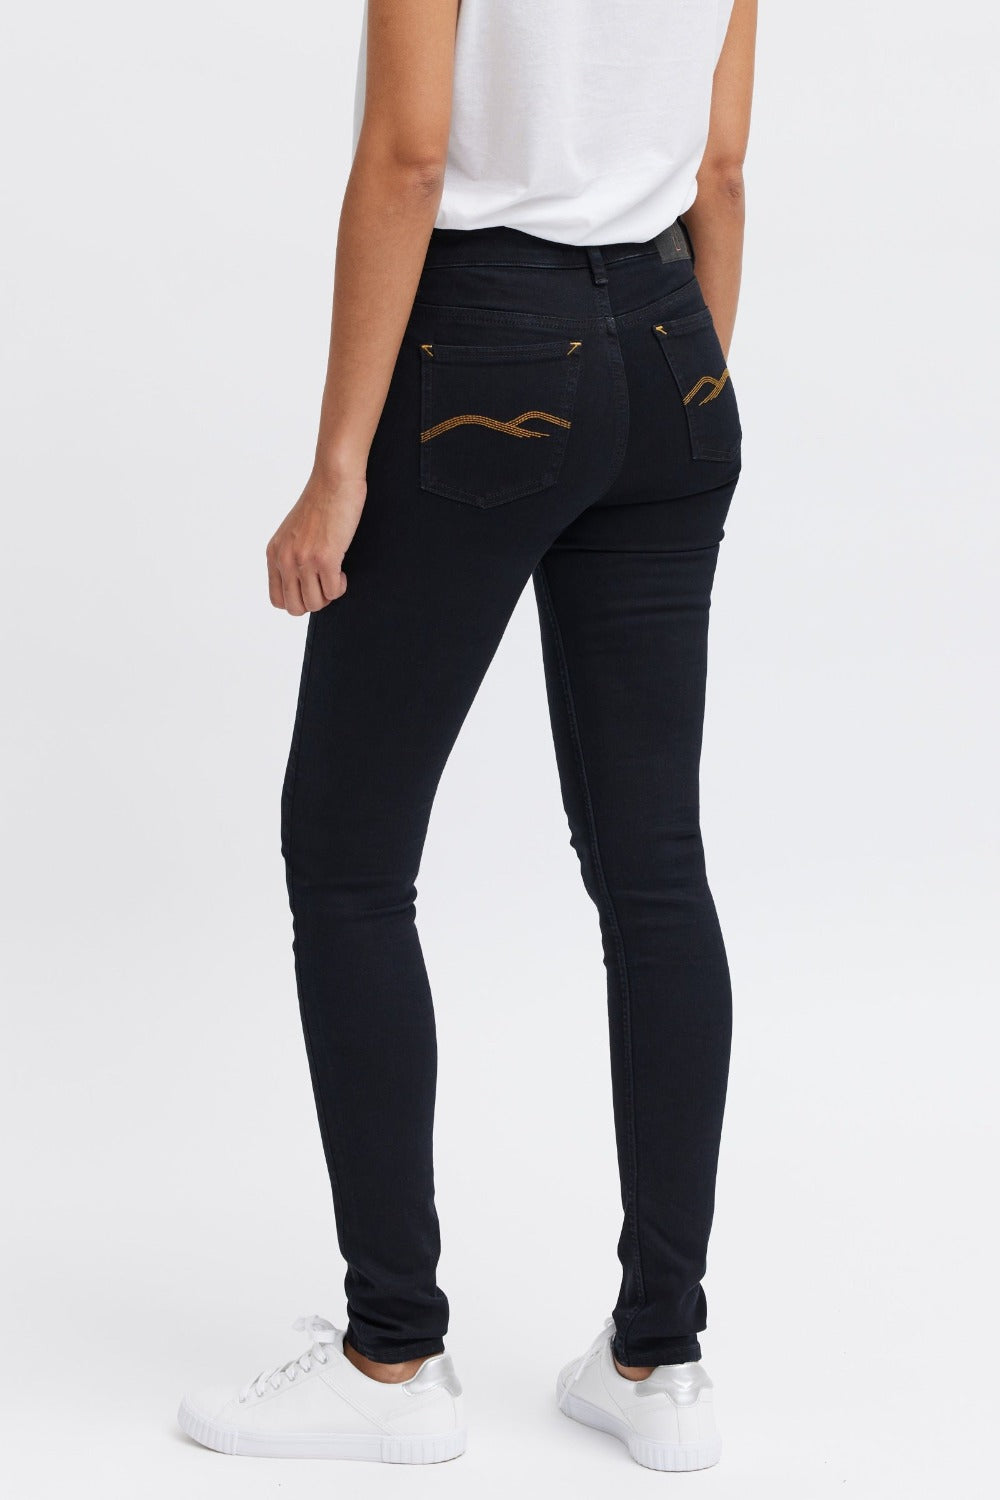 Lease women's organic black jeans by ORGANSK